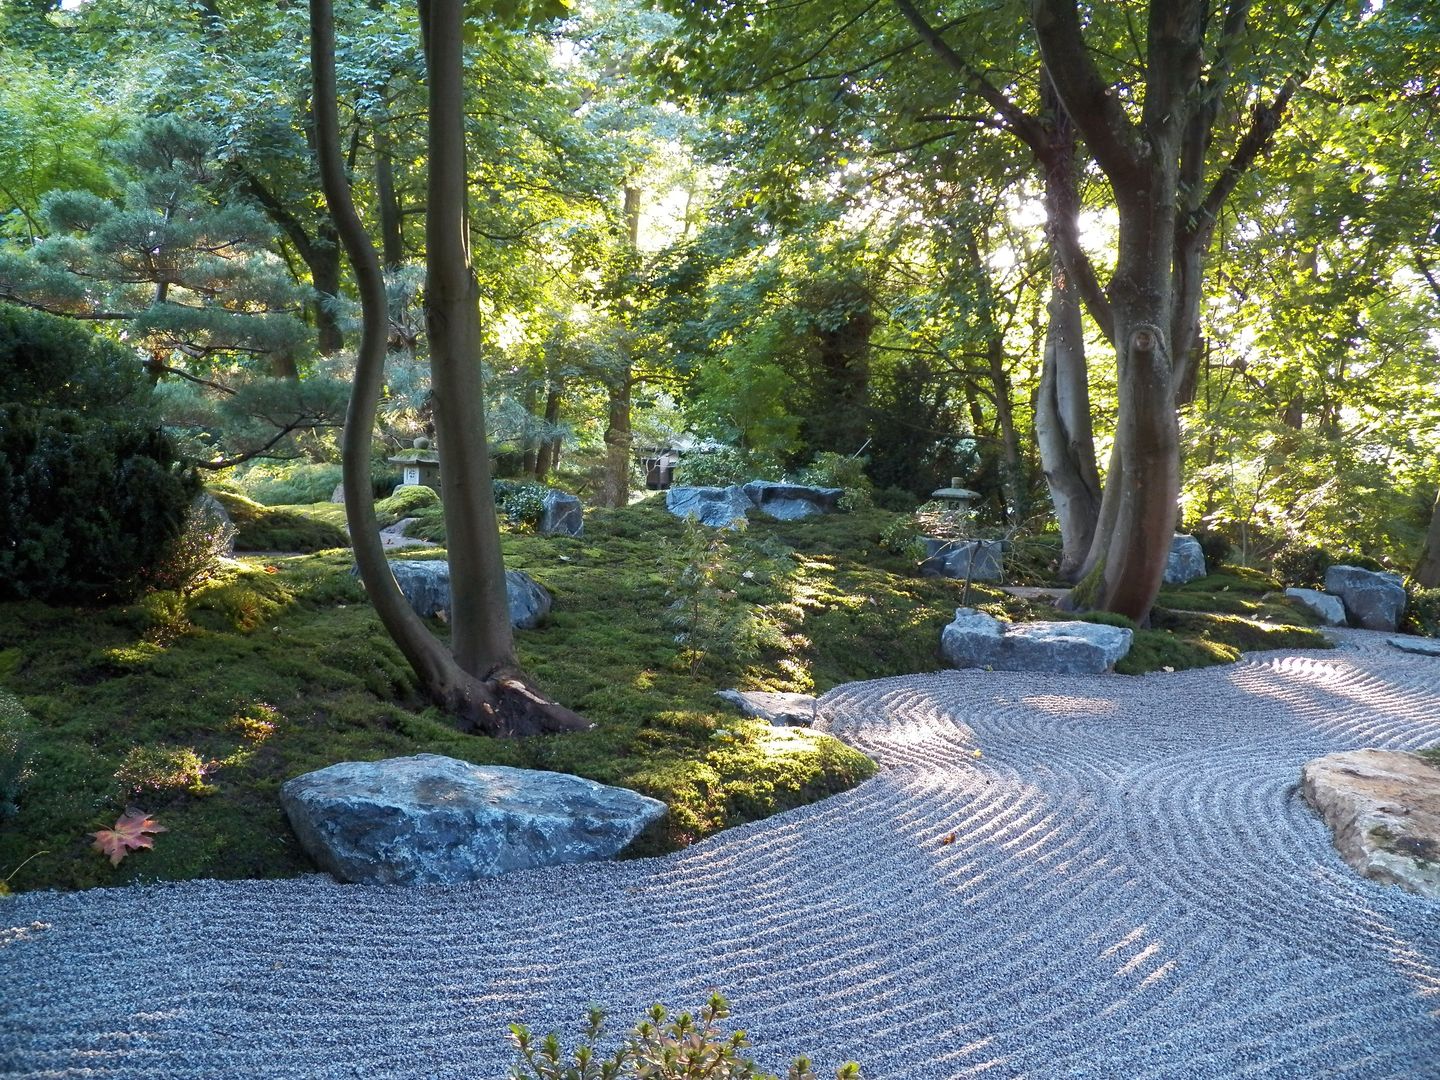 Japan Garten Seminar Oktober 2015, Kokeniwa Japanische Gartengestaltung Kokeniwa Japanische Gartengestaltung Asian style garden